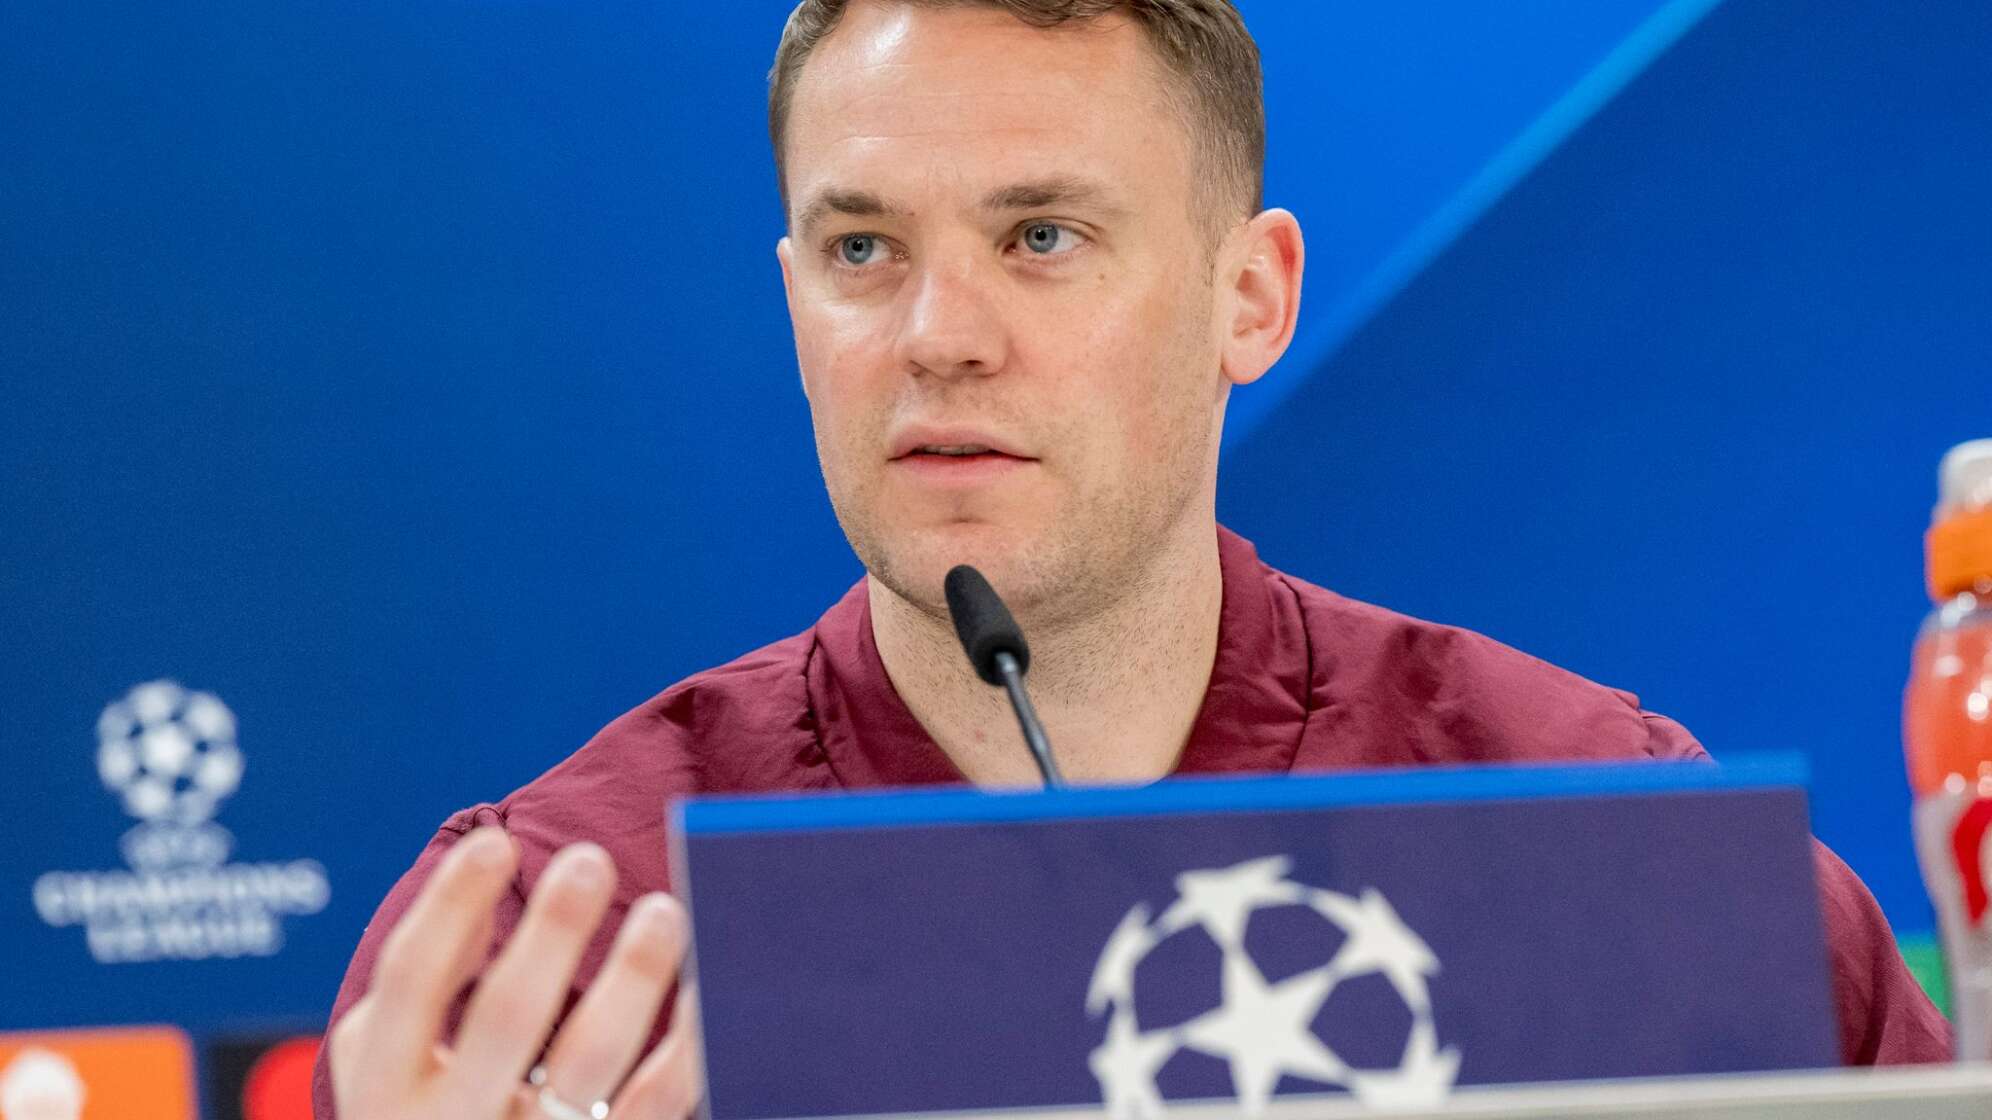 Pressekonferenz FC Bayern München